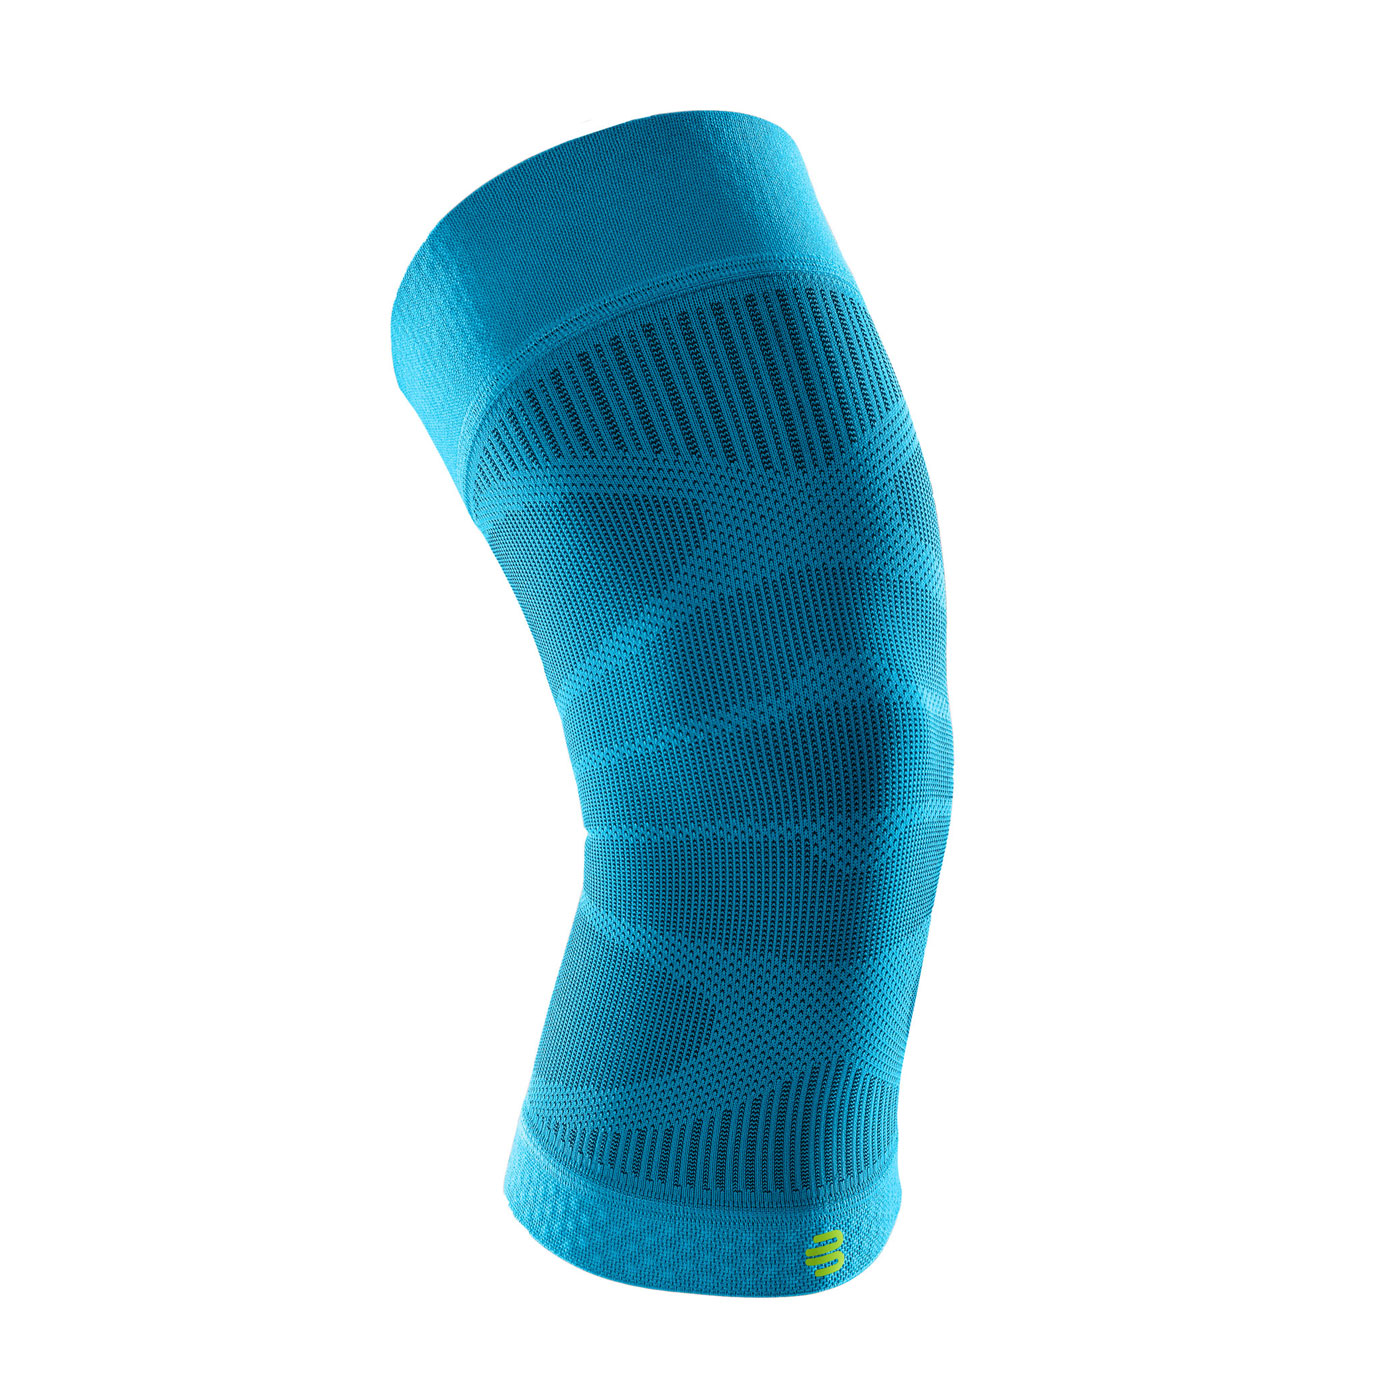 BAUERFEIND保爾範 專業運動壓縮護膝束套 70000363 - 水藍螢光綠